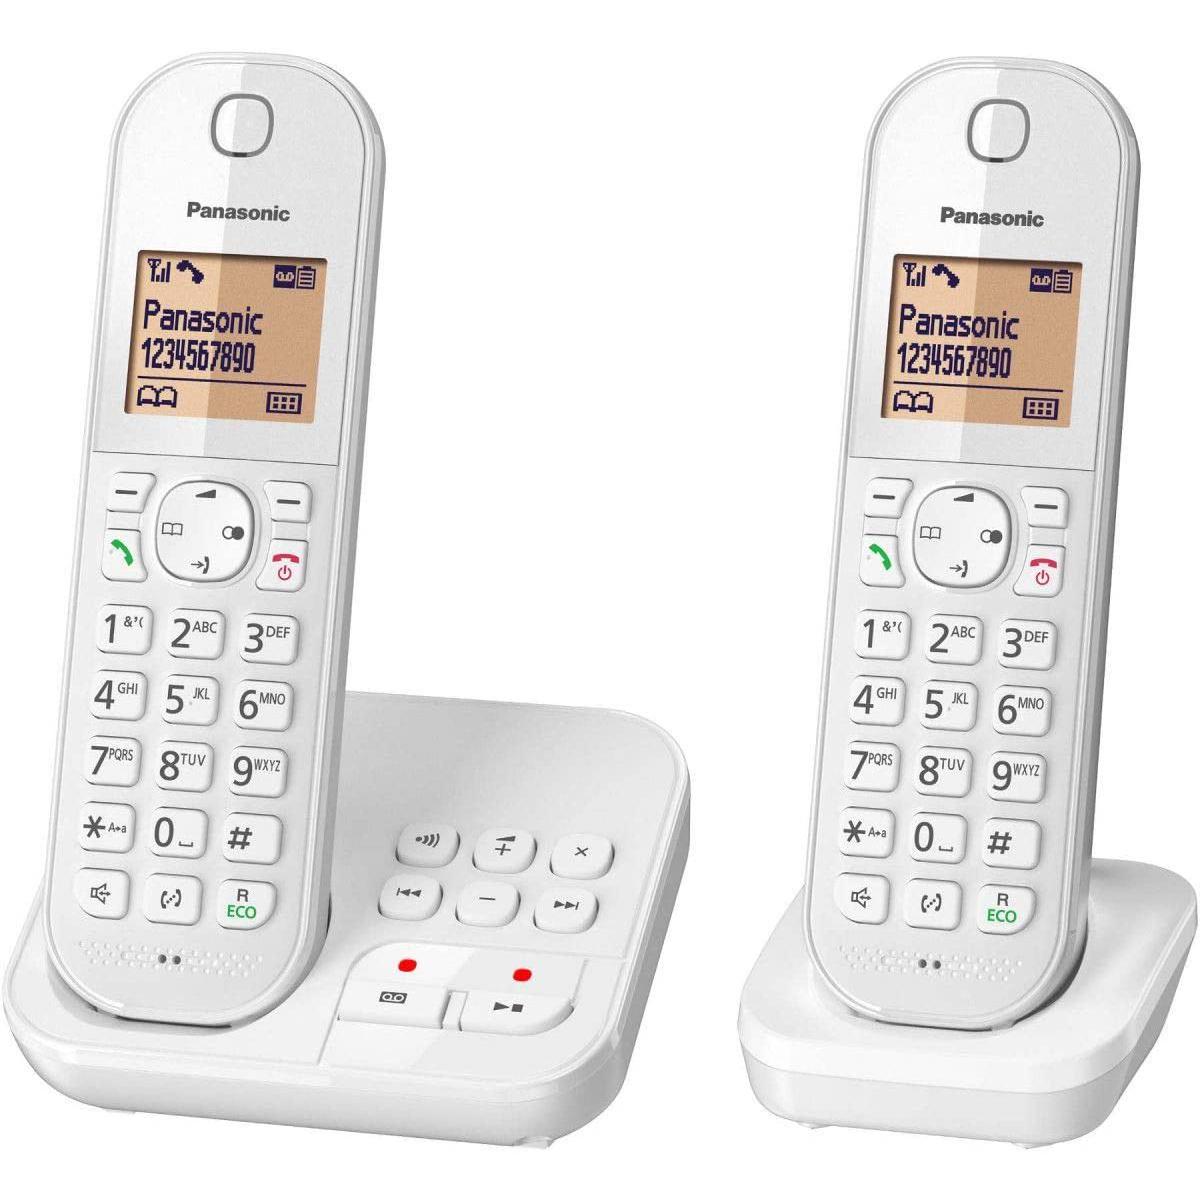 Panasonic - Rasage Electrique - telephone sans Fil Dect duo avec répondeur Blanc - Téléphone fixe filaire